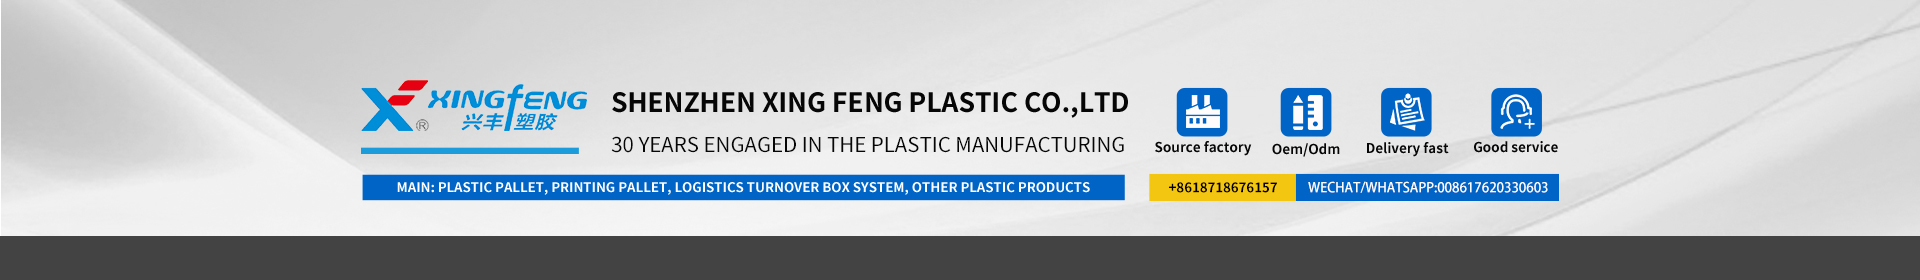 झिंगफेंग प्लास्टिक कंपनी 30 वर्षांपासून प्लास्टिक उत्पादनांमध्ये व्यावसायिक आहे